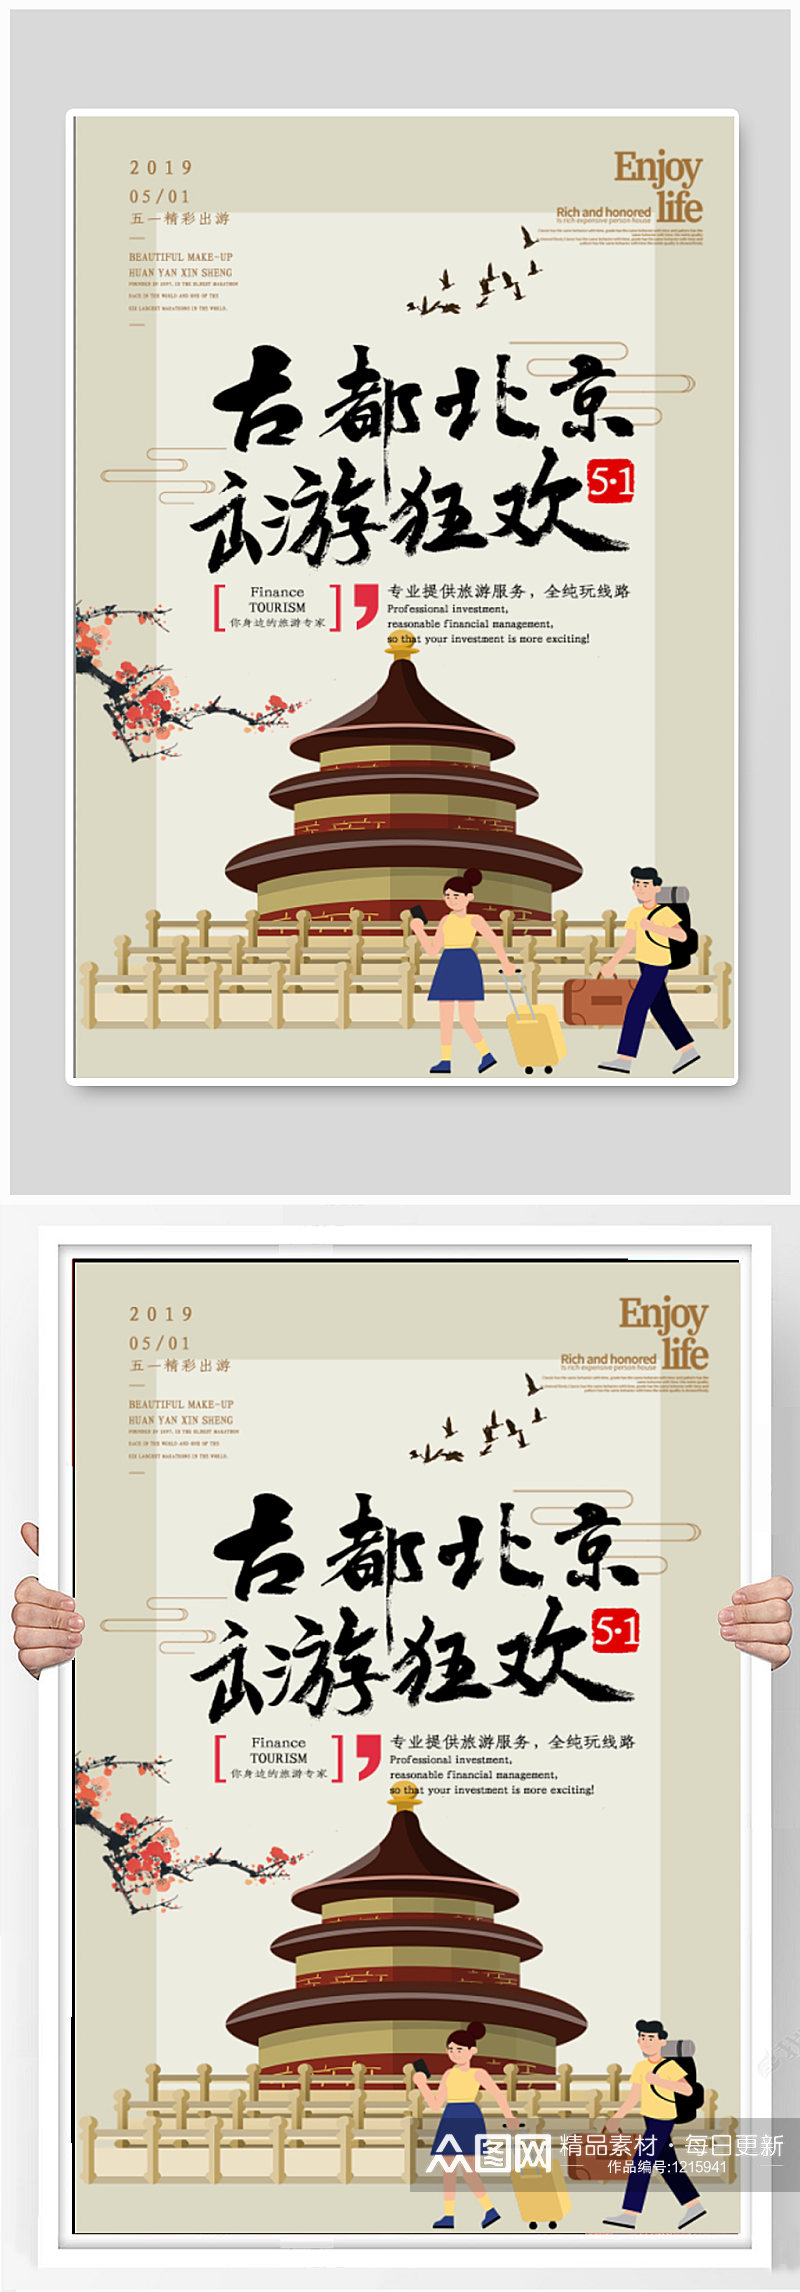 北京故宫旅行宣传海报素材